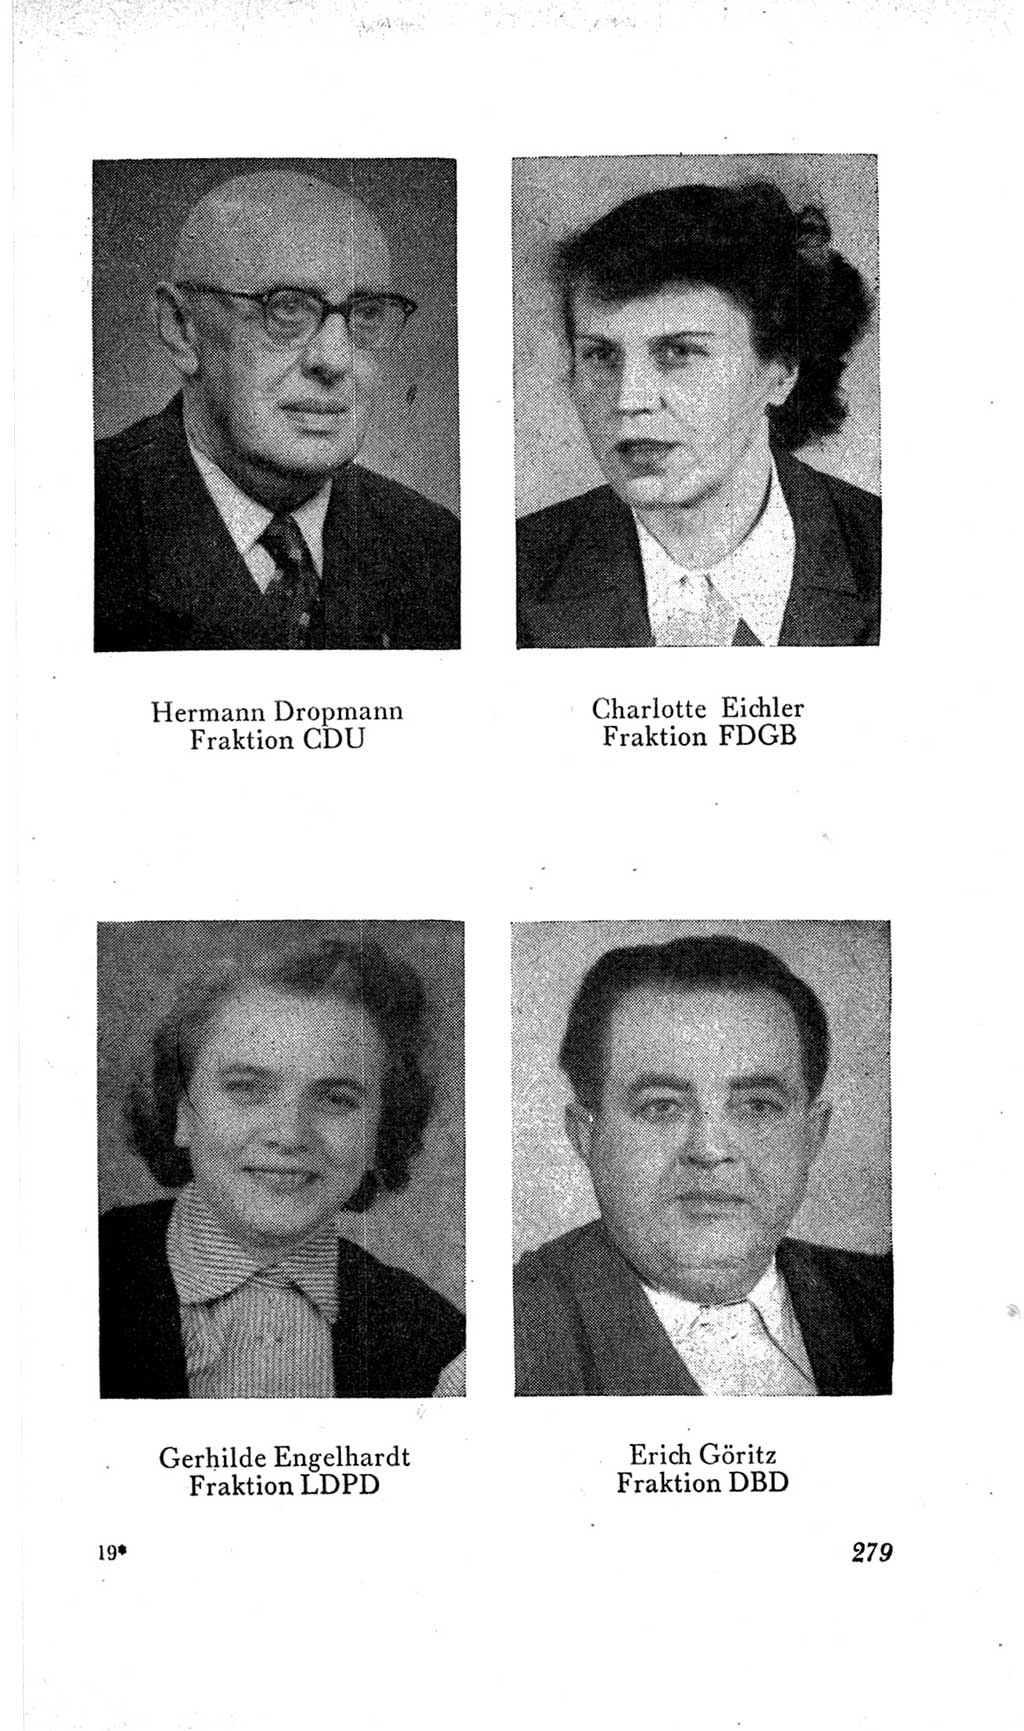 Handbuch der Volkskammer (VK) der Deutschen Demokratischen Republik (DDR), 2. Wahlperiode 1954-1958, Seite 279 (Hdb. VK. DDR, 2. WP. 1954-1958, S. 279)